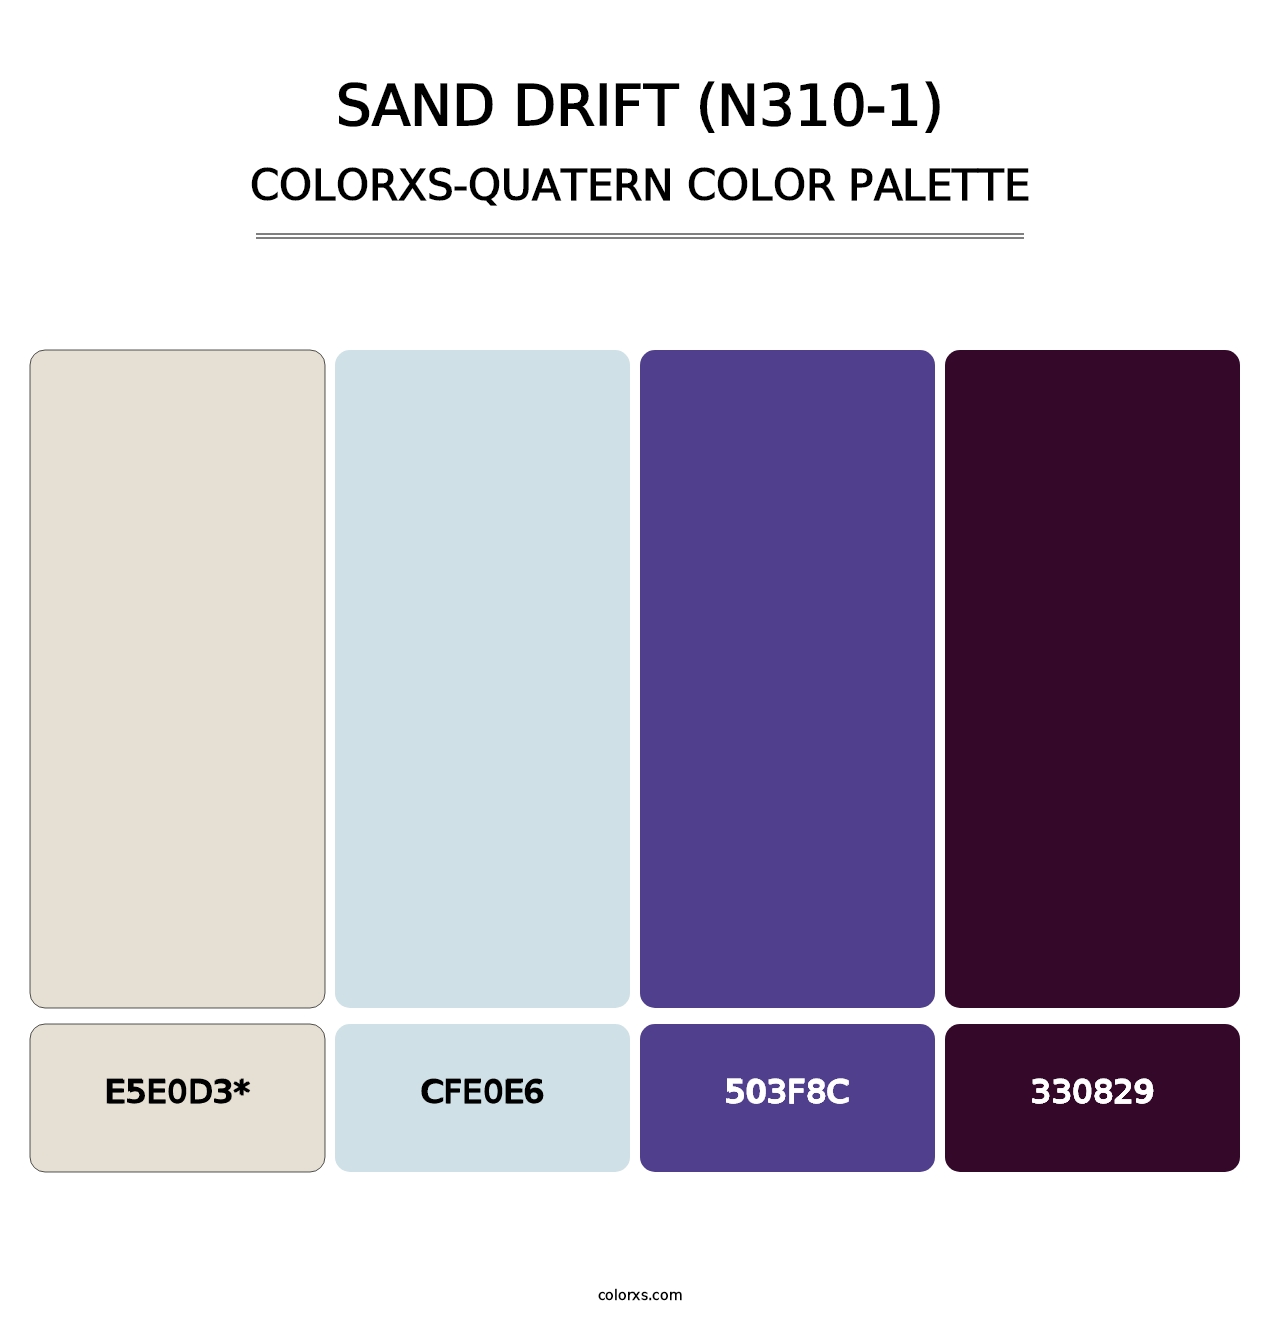 Sand Drift (N310-1) - Colorxs Quatern Palette